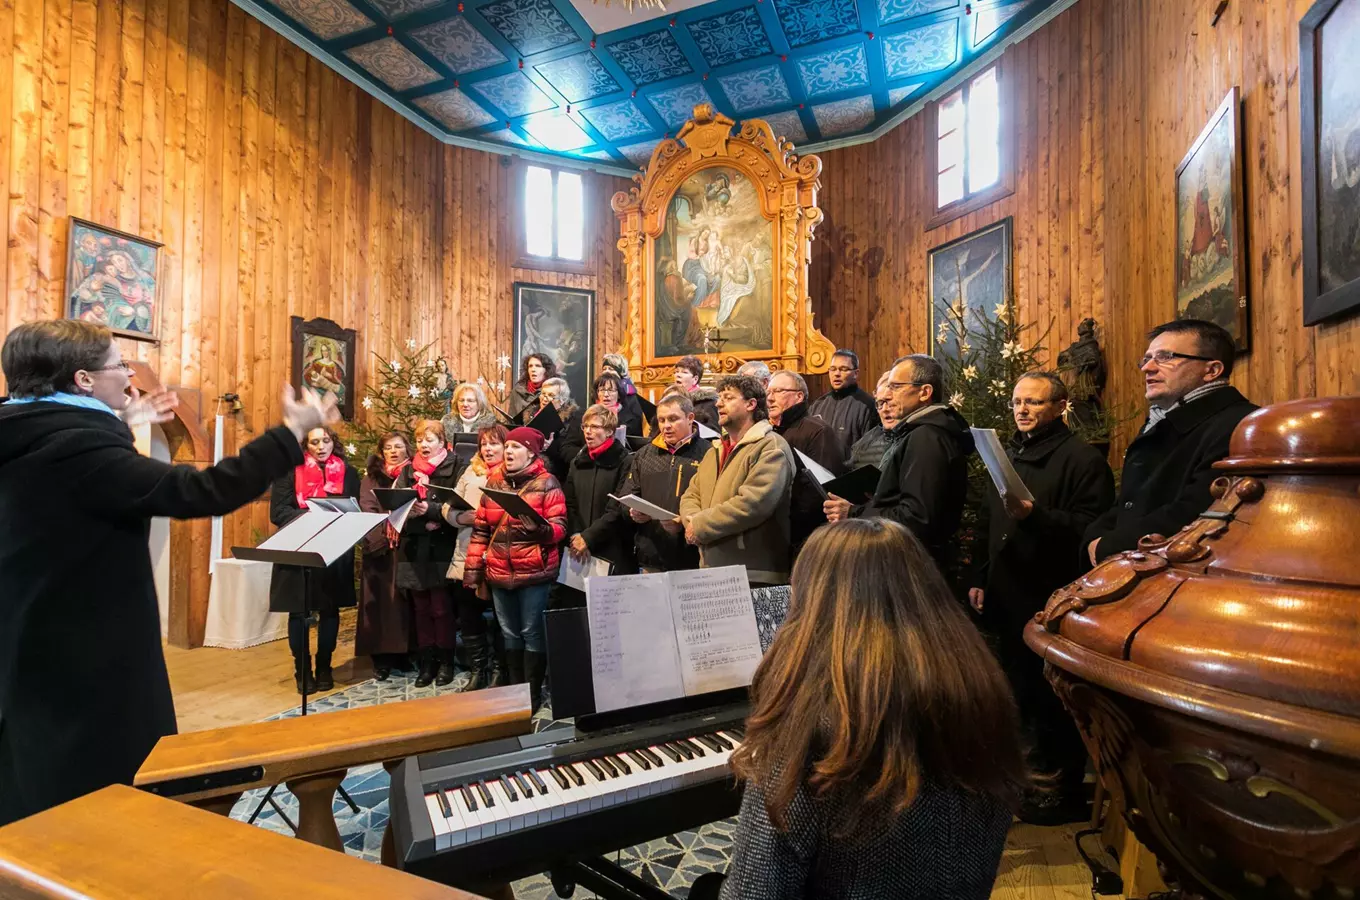 Vánoční jarmark v rožnovském skanzenu připomene staré vánoční zvyky